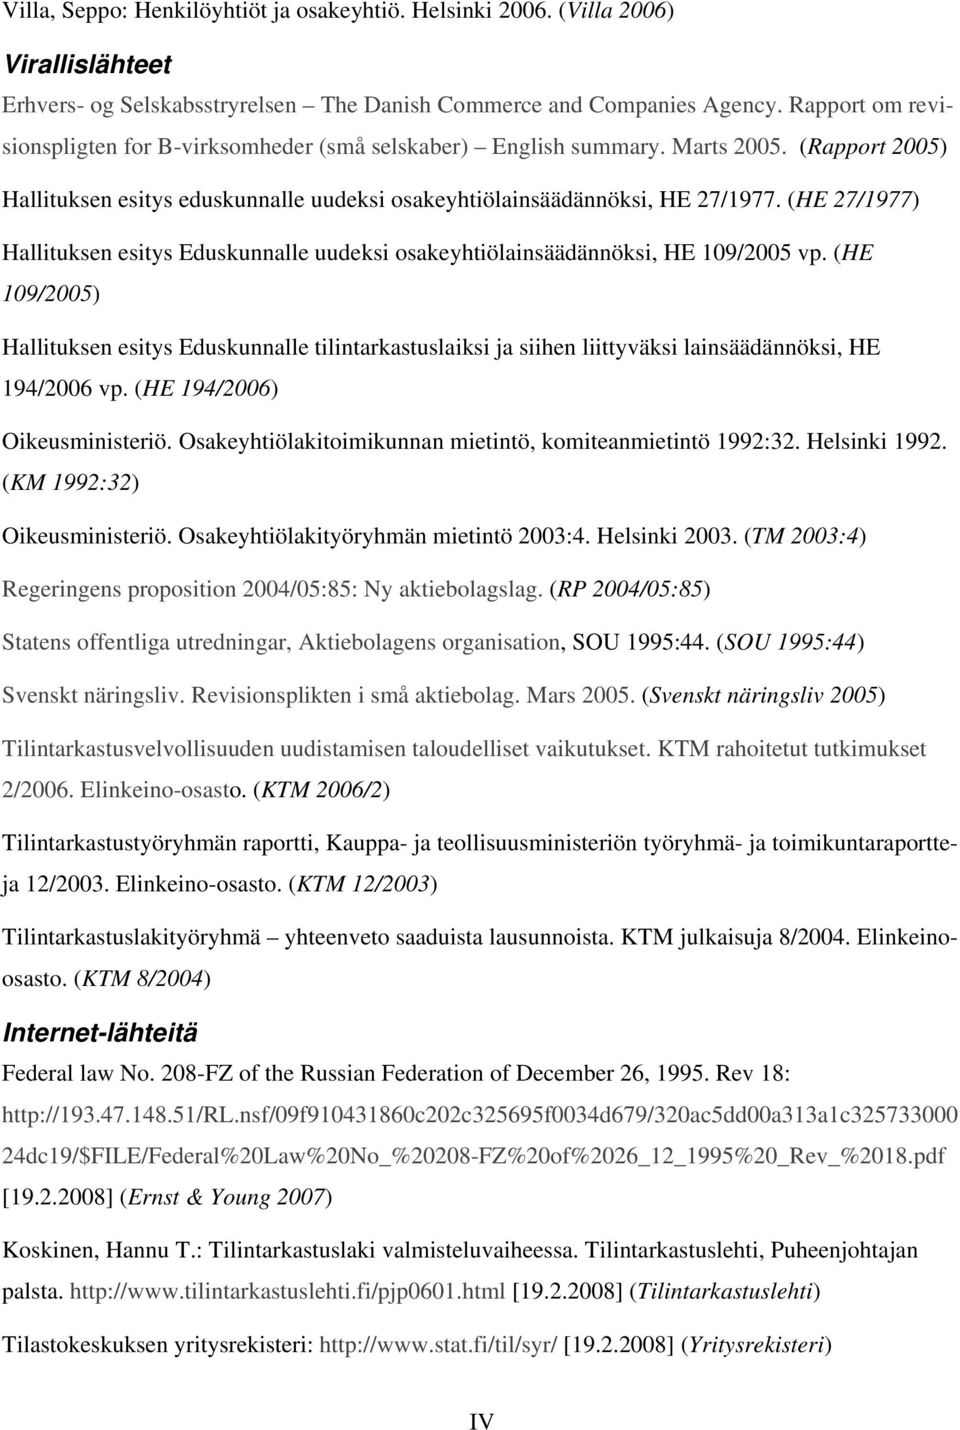 (HE 27/1977) Hallituksen esitys Eduskunnalle uudeksi osakeyhtiölainsäädännöksi, HE 109/2005 vp.